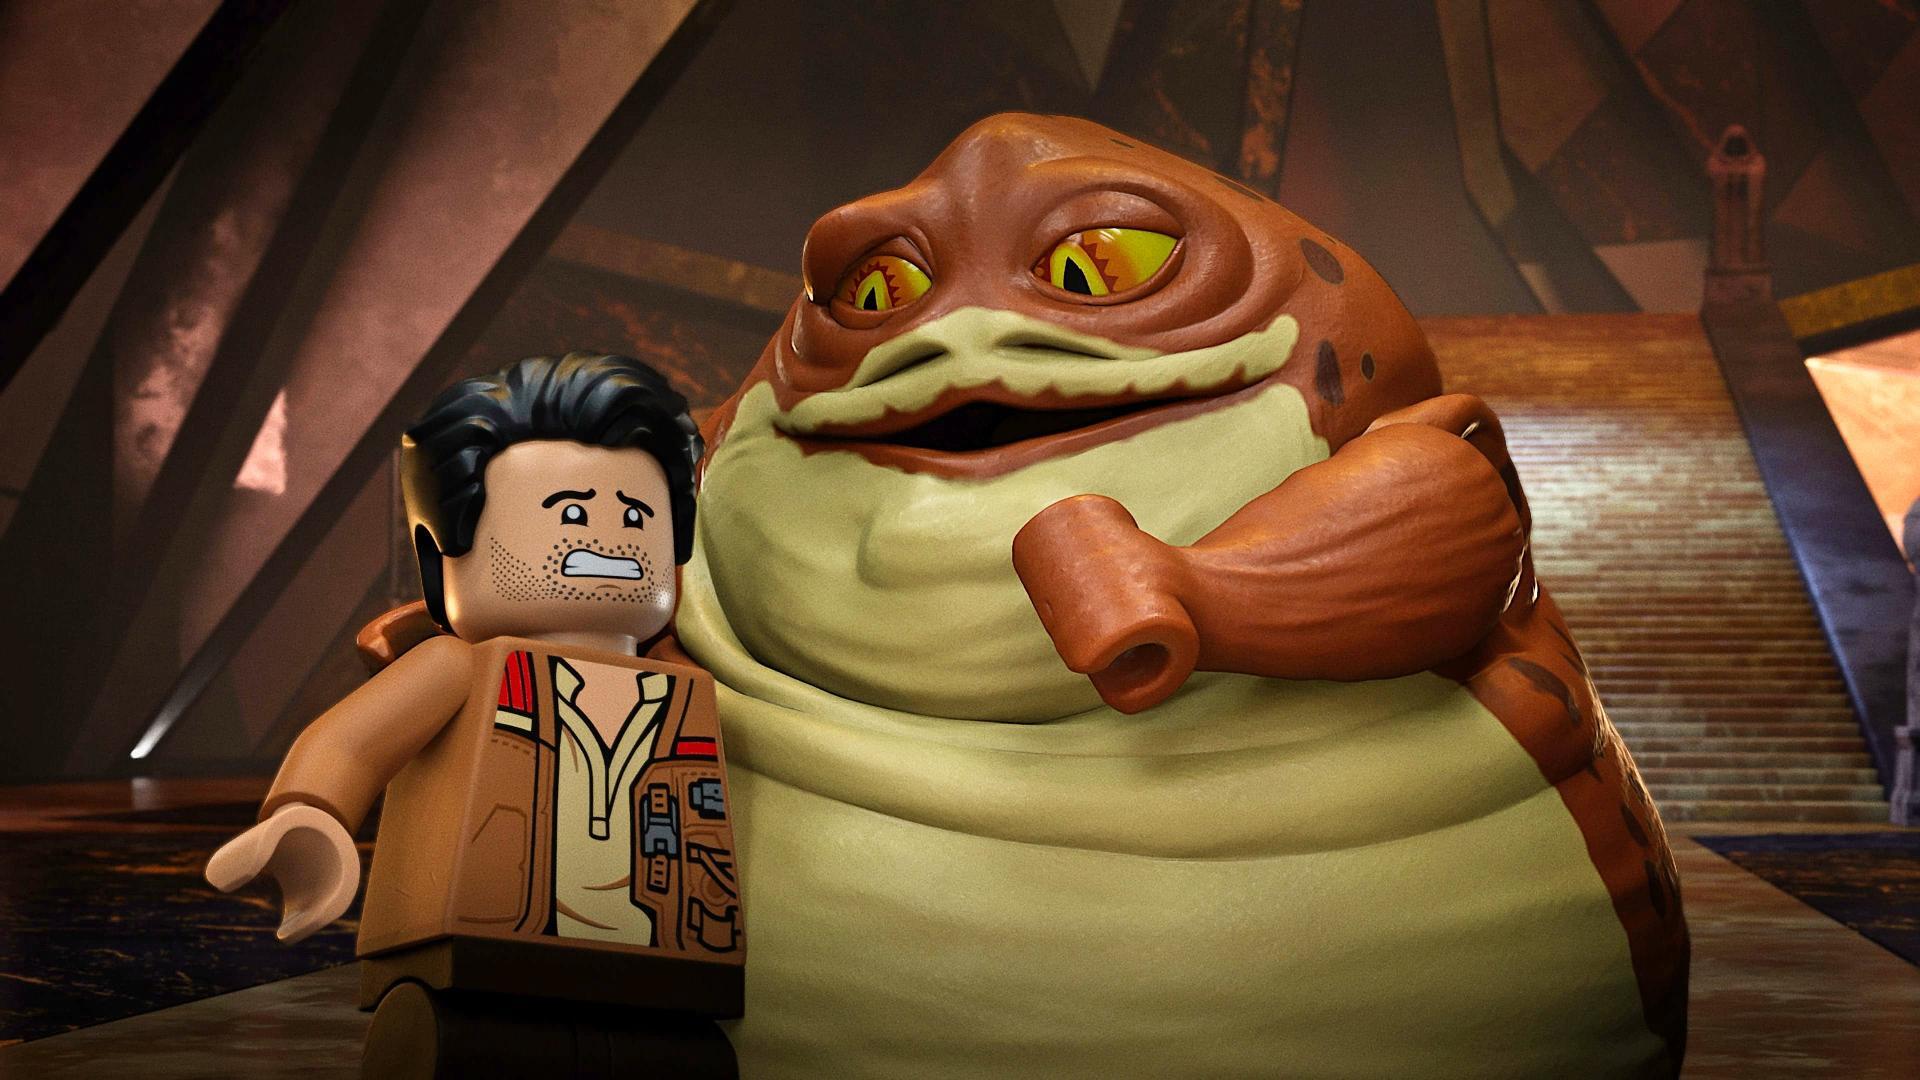 ლეგოს ვარსკვლავური ომები - შემაძრწუნებელი ისტორიები / Lego Star Wars Terrifying Tales